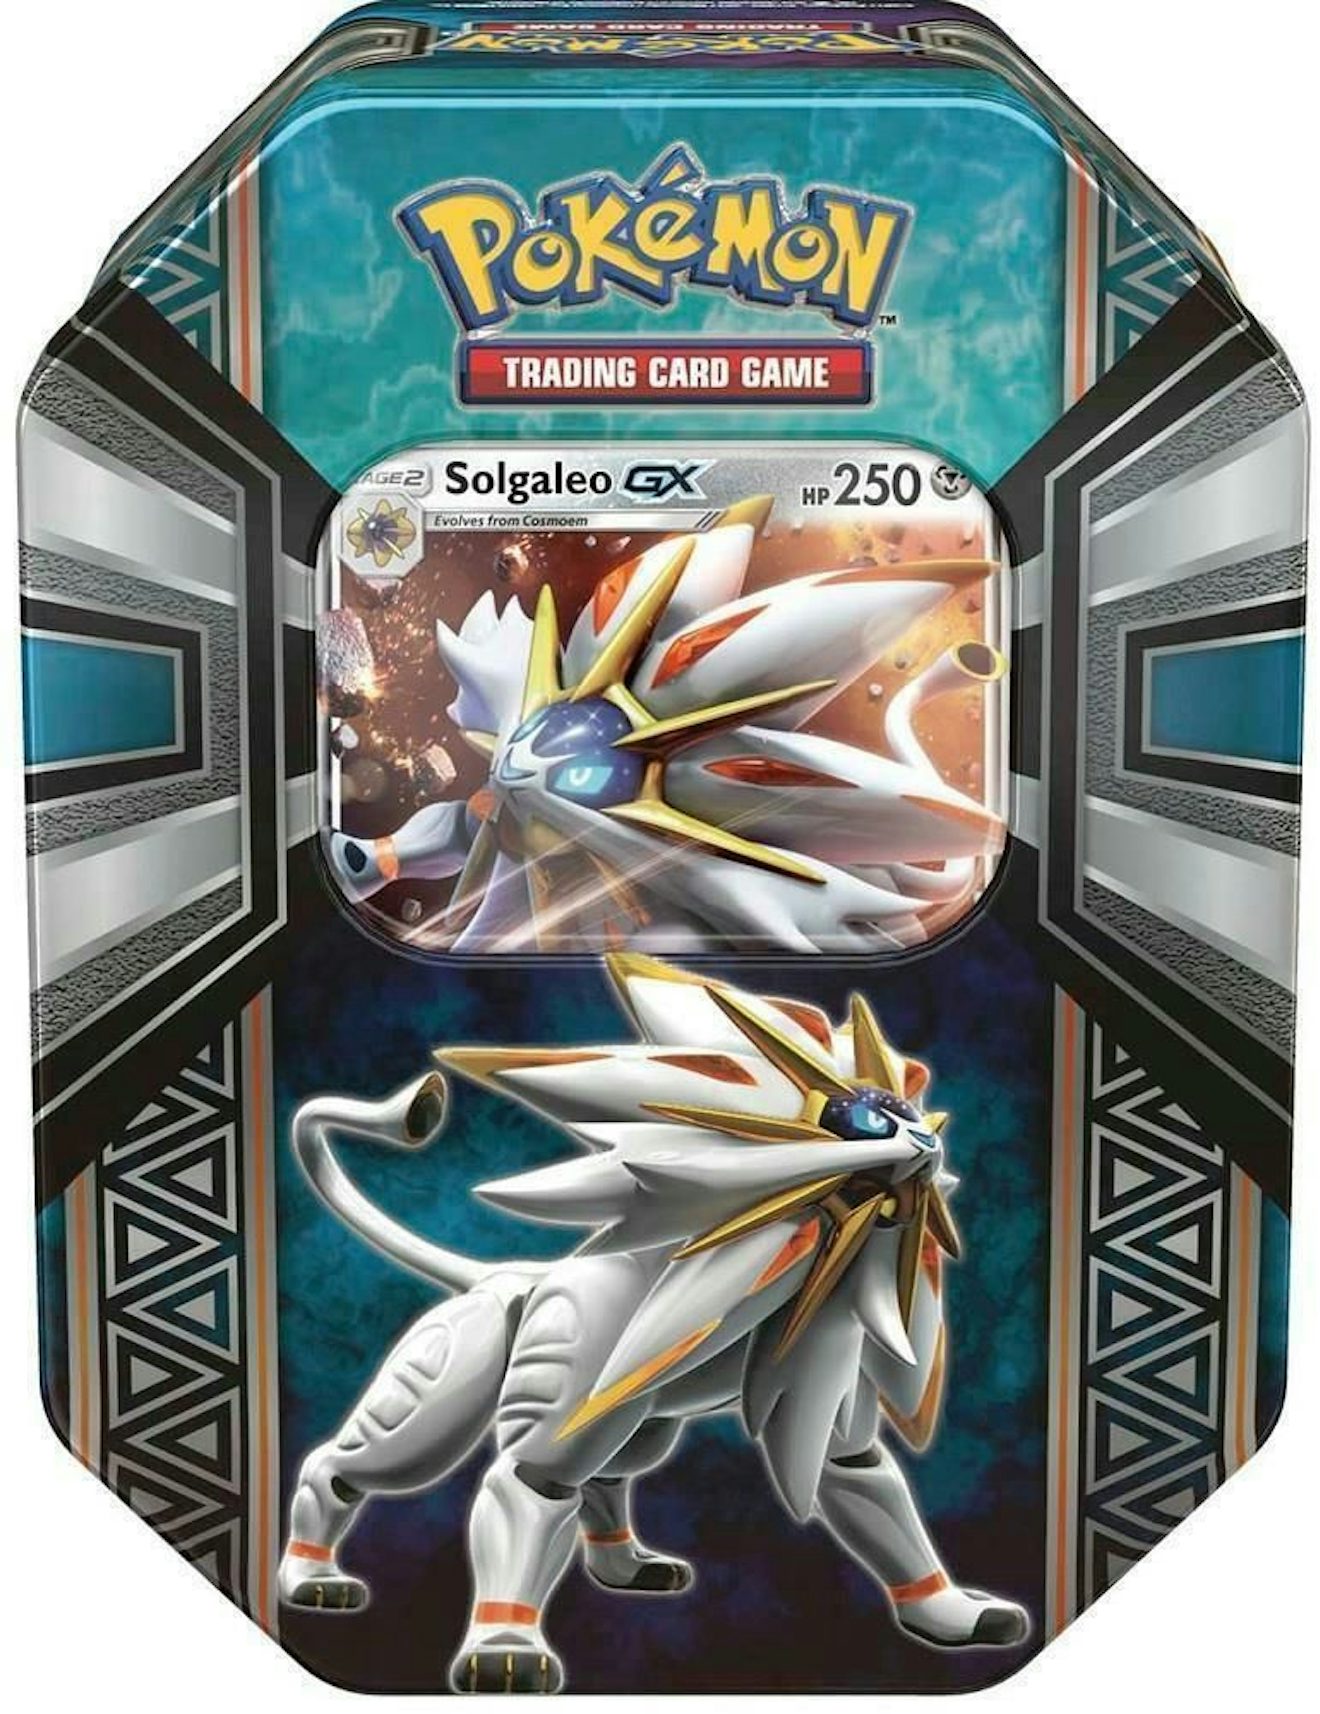 Pokémon TCG: Alola Collection (Solgaleo)